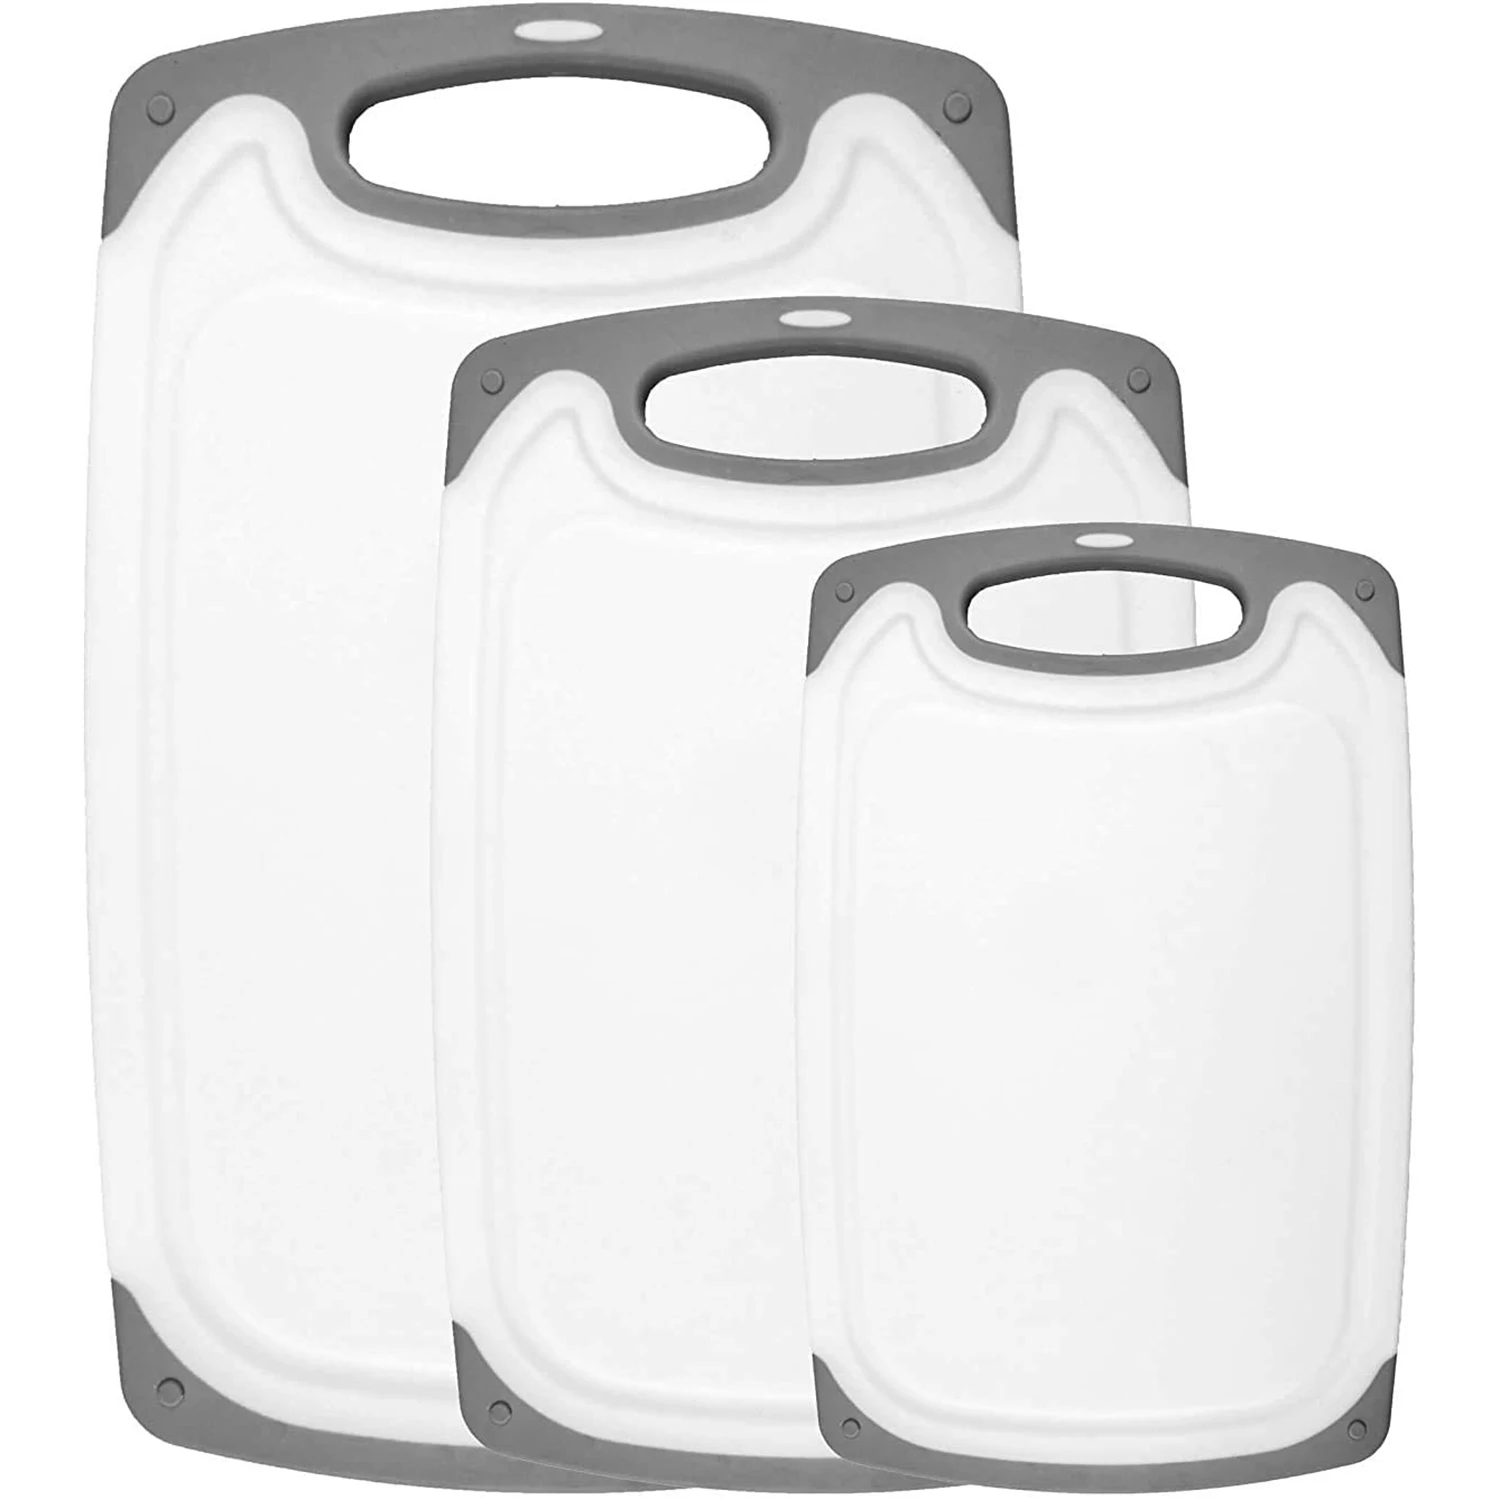 

Кухонные разделочные доски (набор из 3 штук)-зеркальная раковина, без перфорации, можно мыть в посудомоечной машине